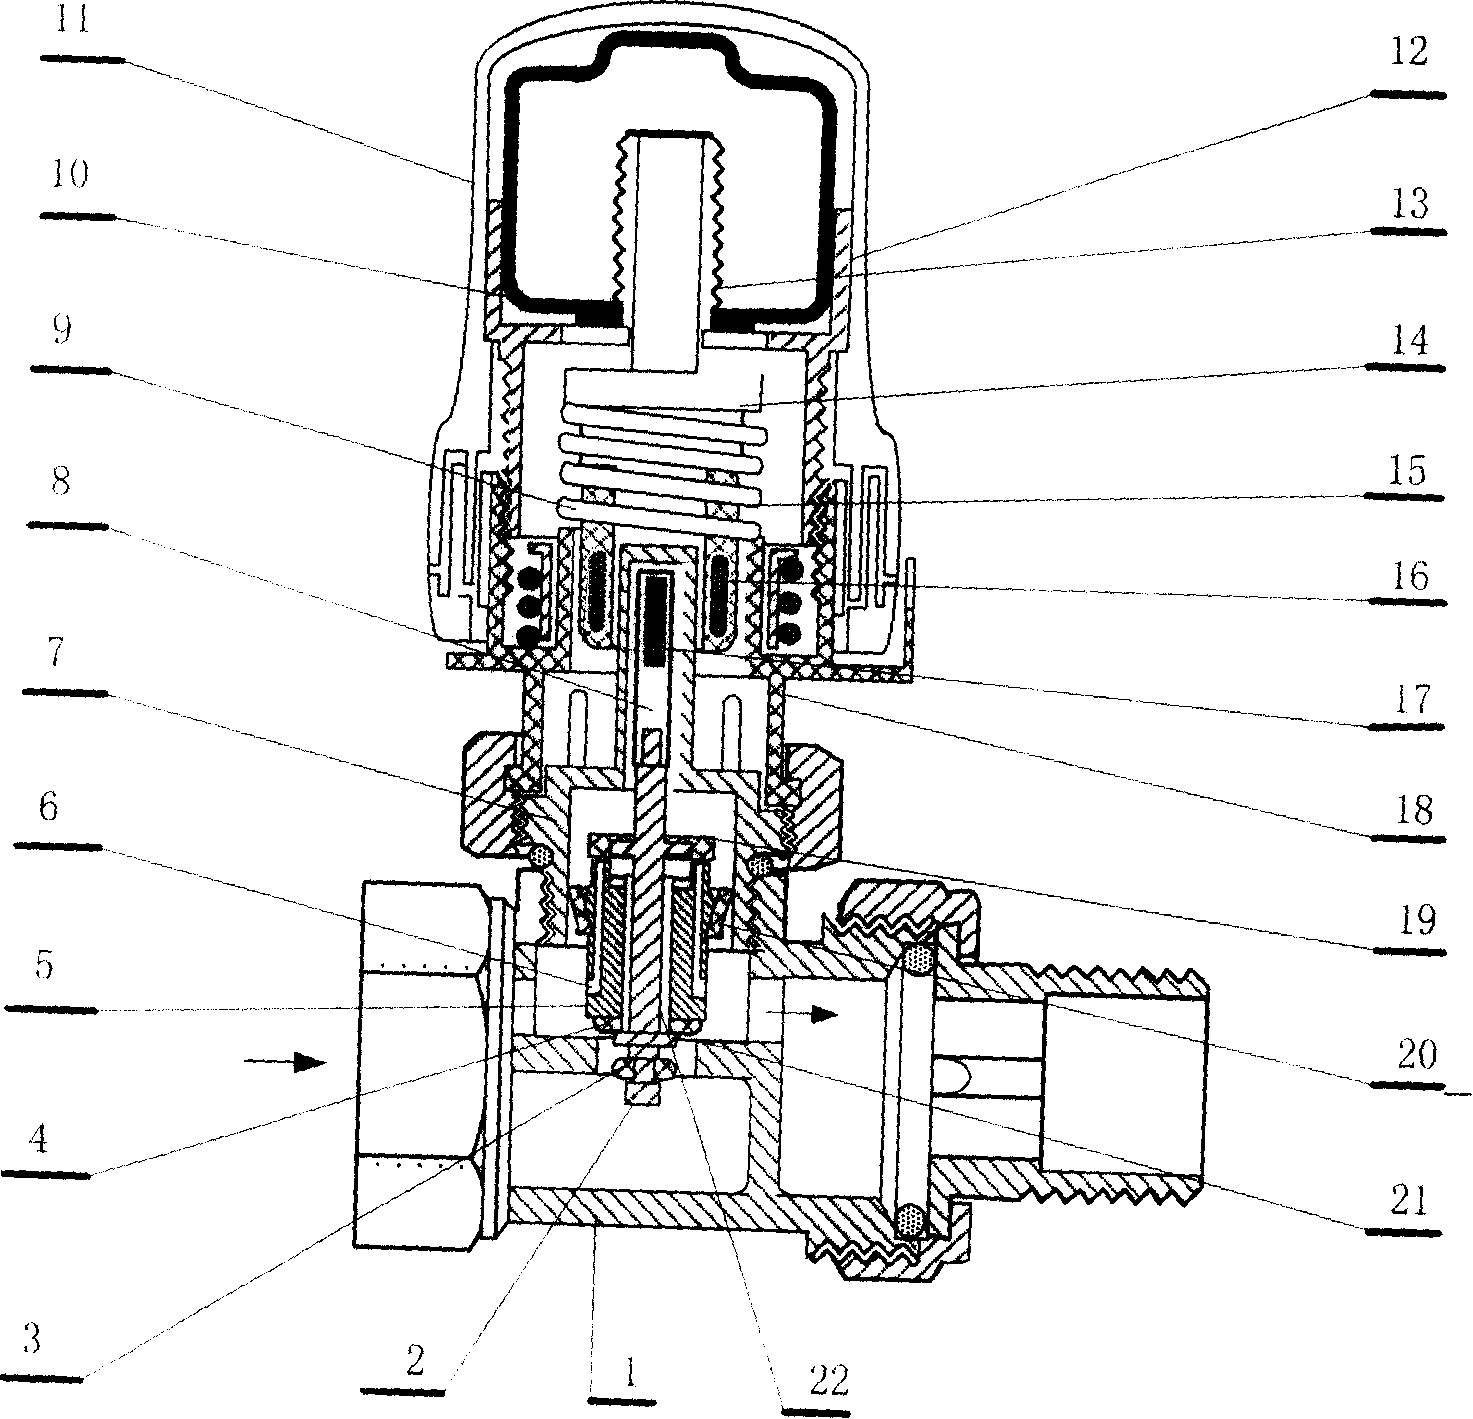 Self-temperature controlled valve